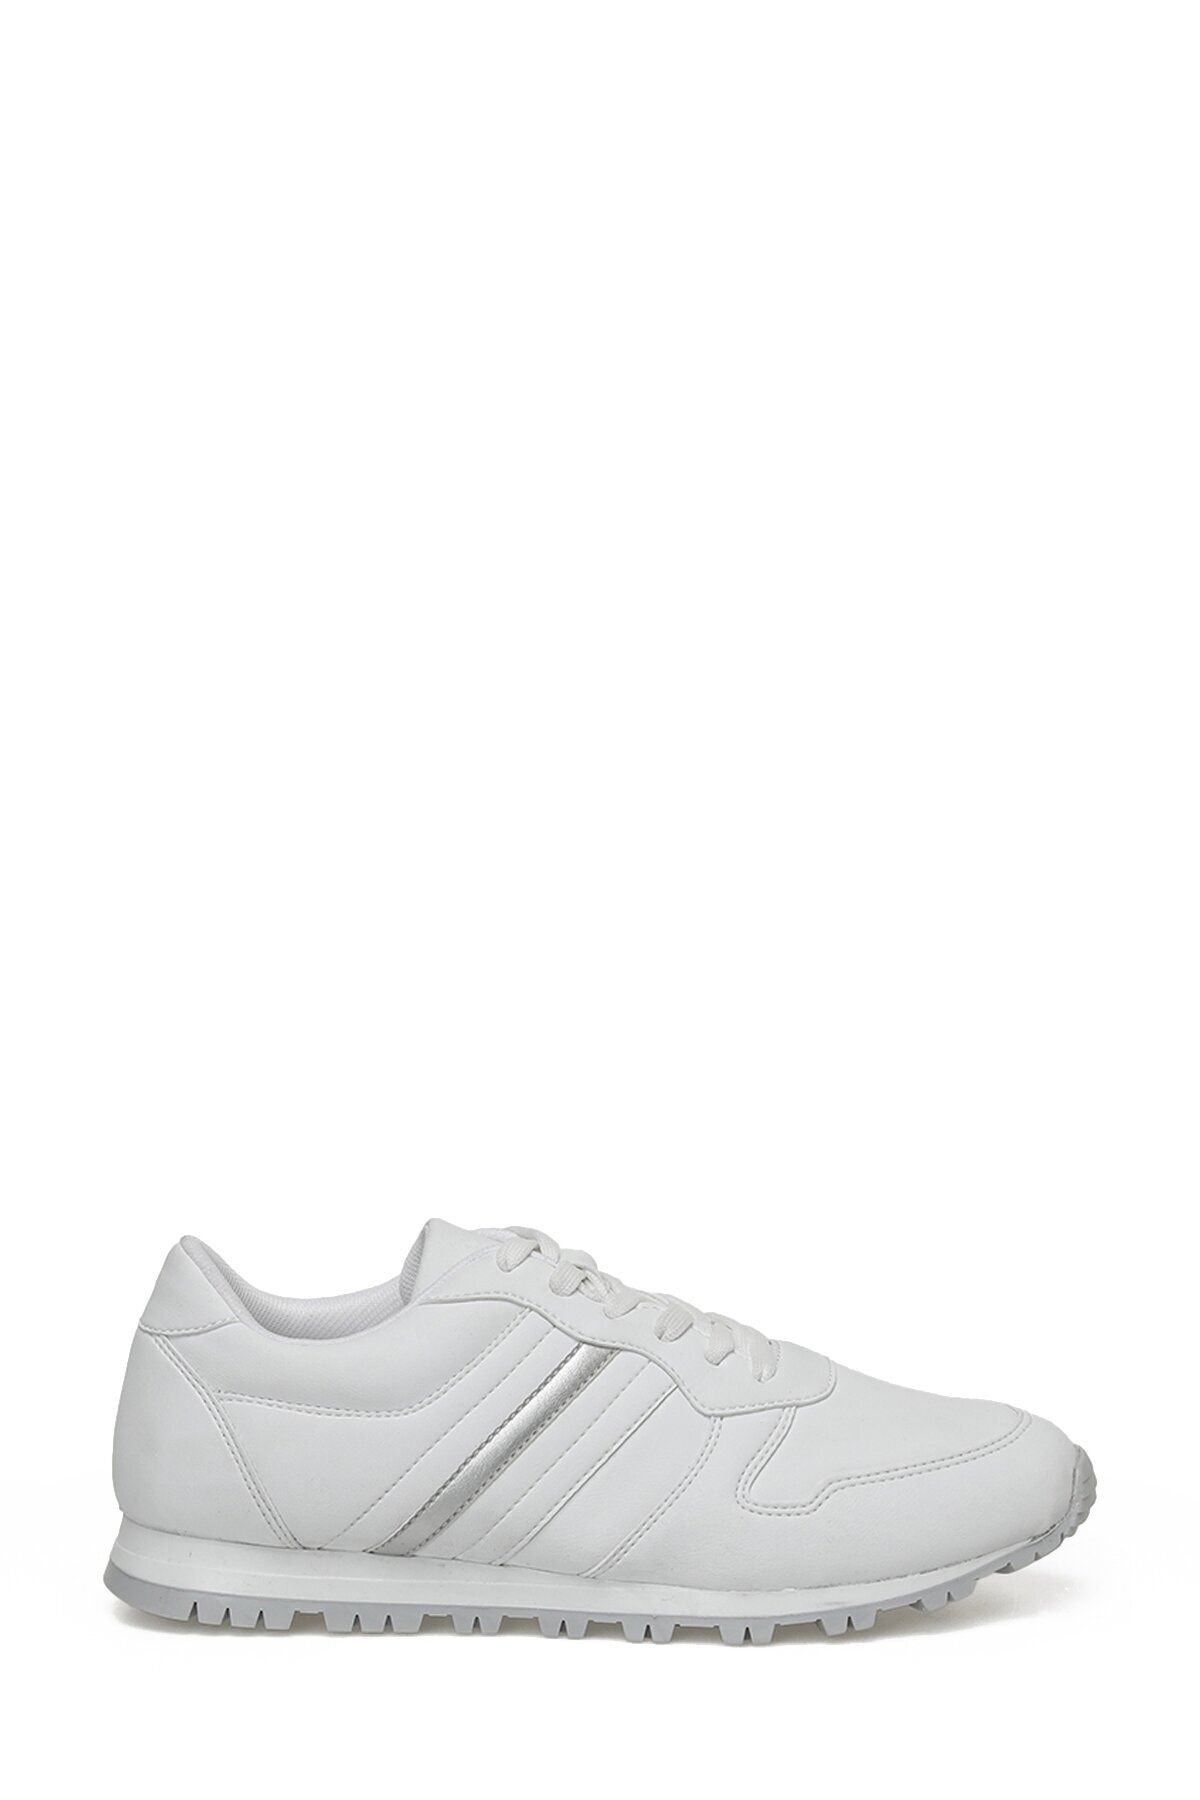 Art Bella Cs23025 3fx Beyaz Kadın Spor Ayakkabı